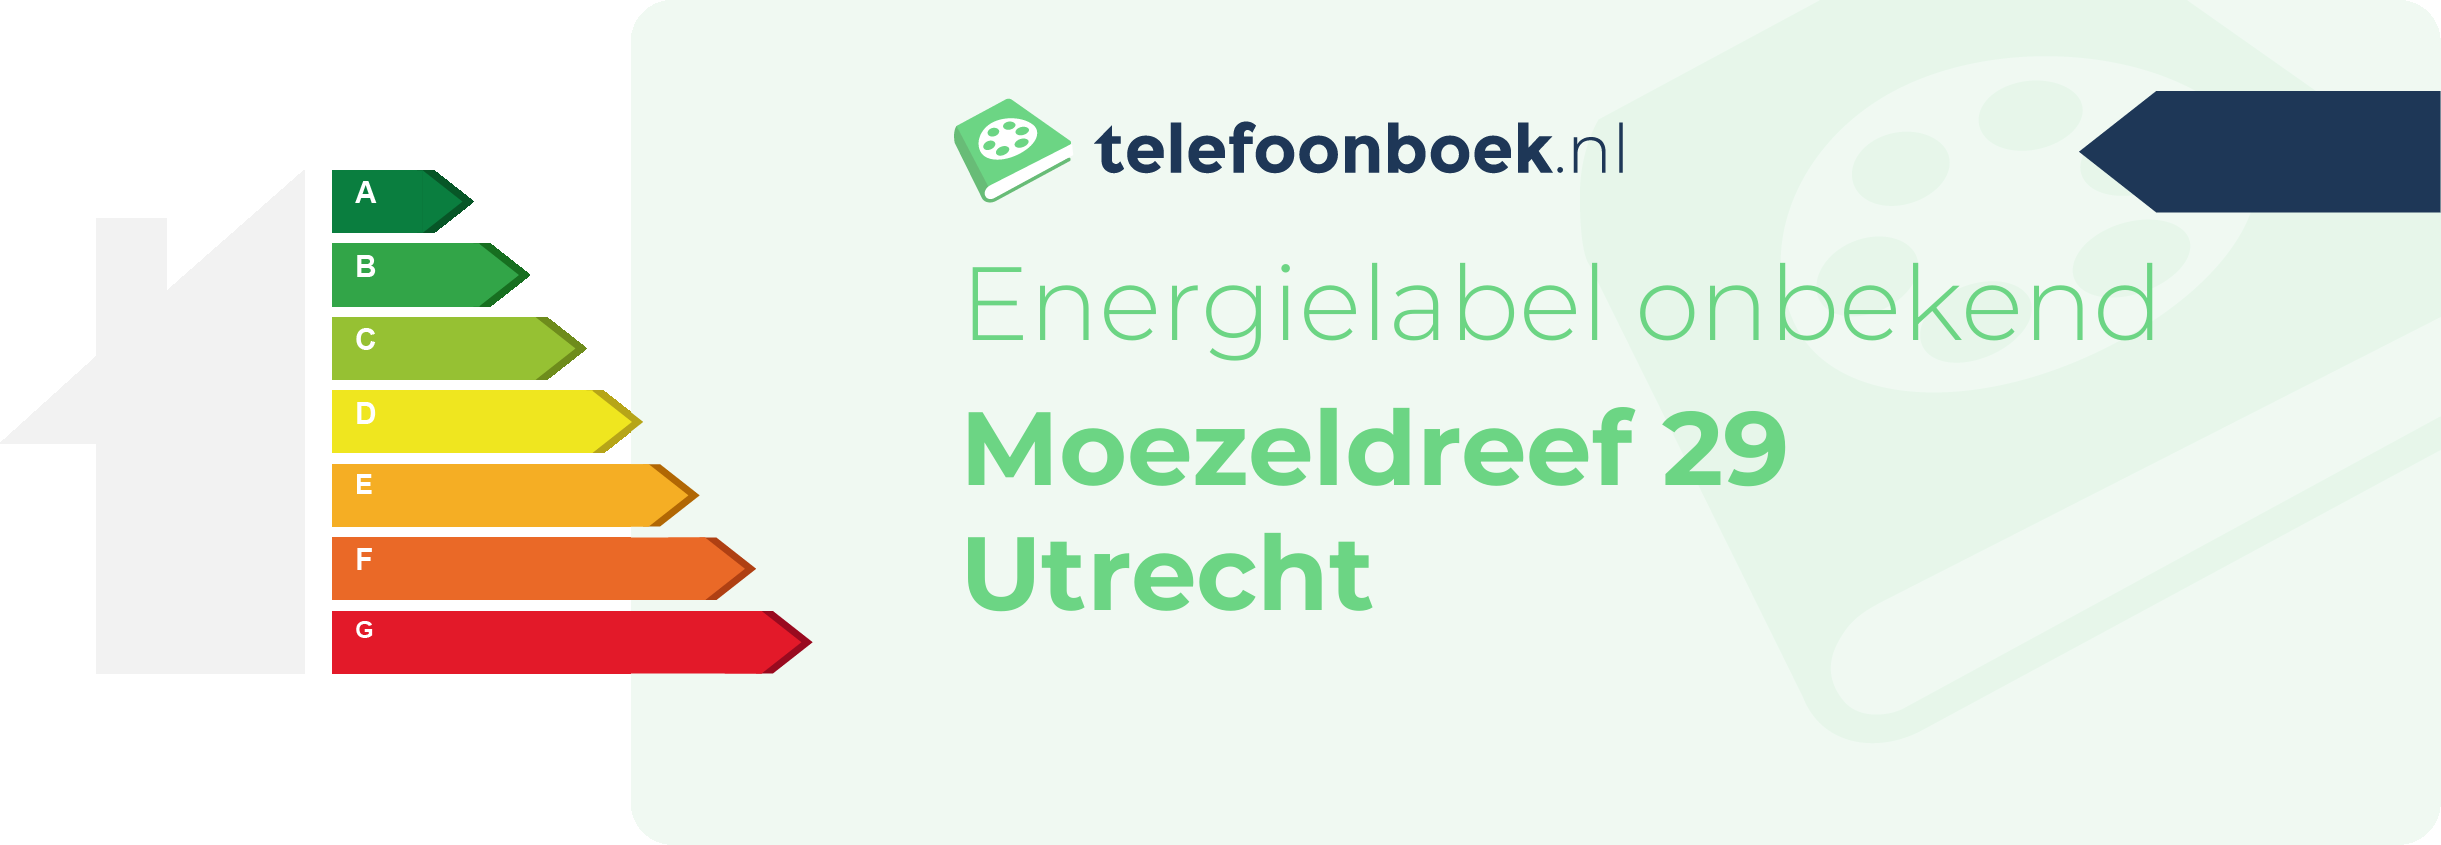 Energielabel Moezeldreef 29 Utrecht